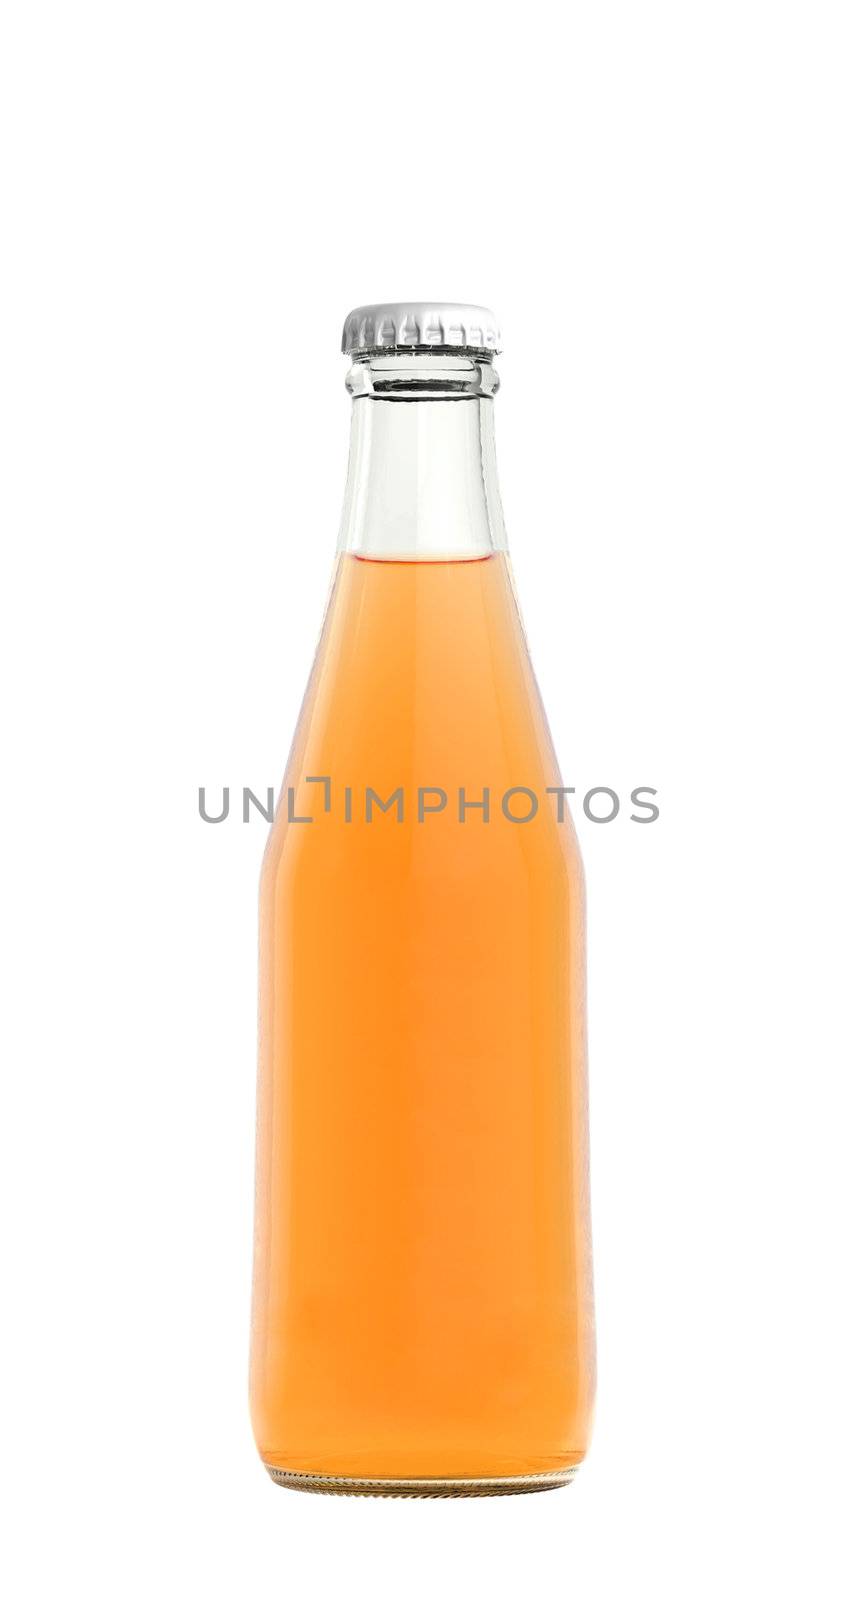 Orange juice drink in glass bottle